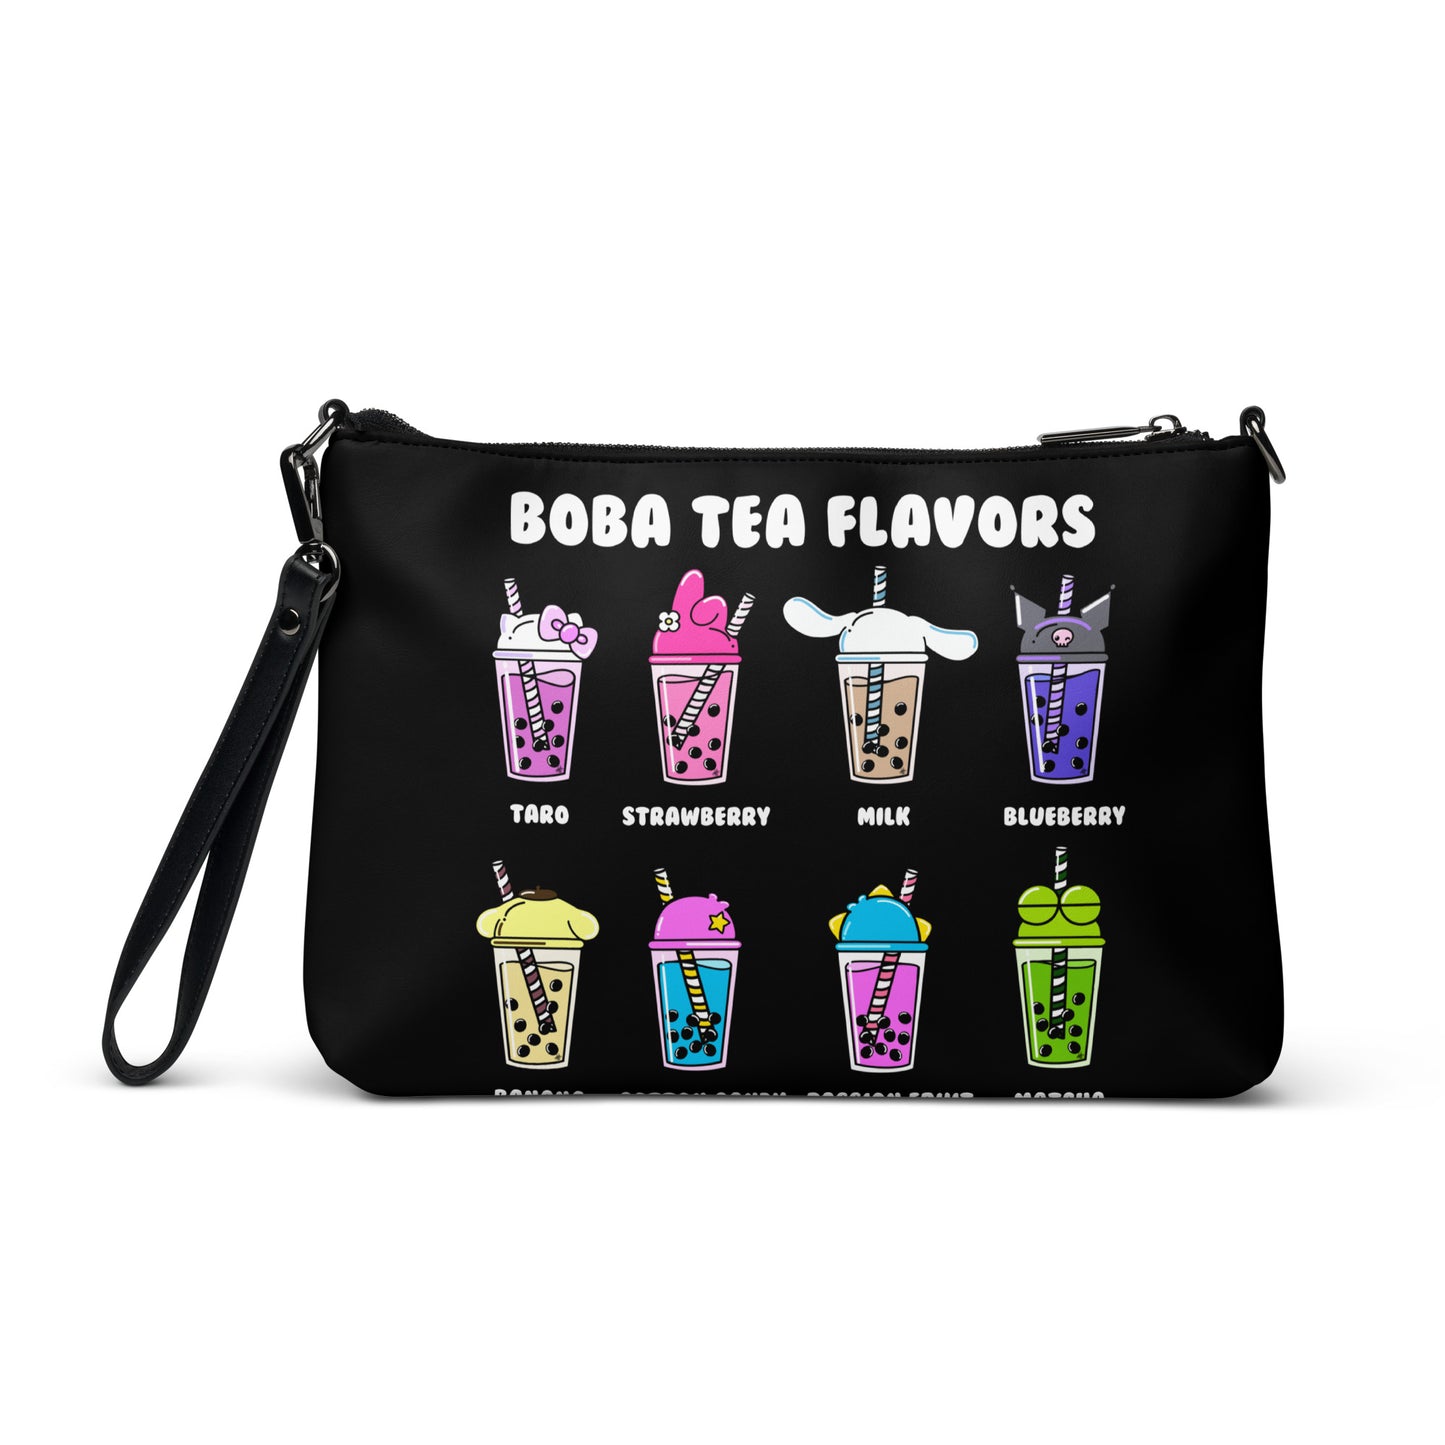 Boba Tea Flavors Crossbody bag